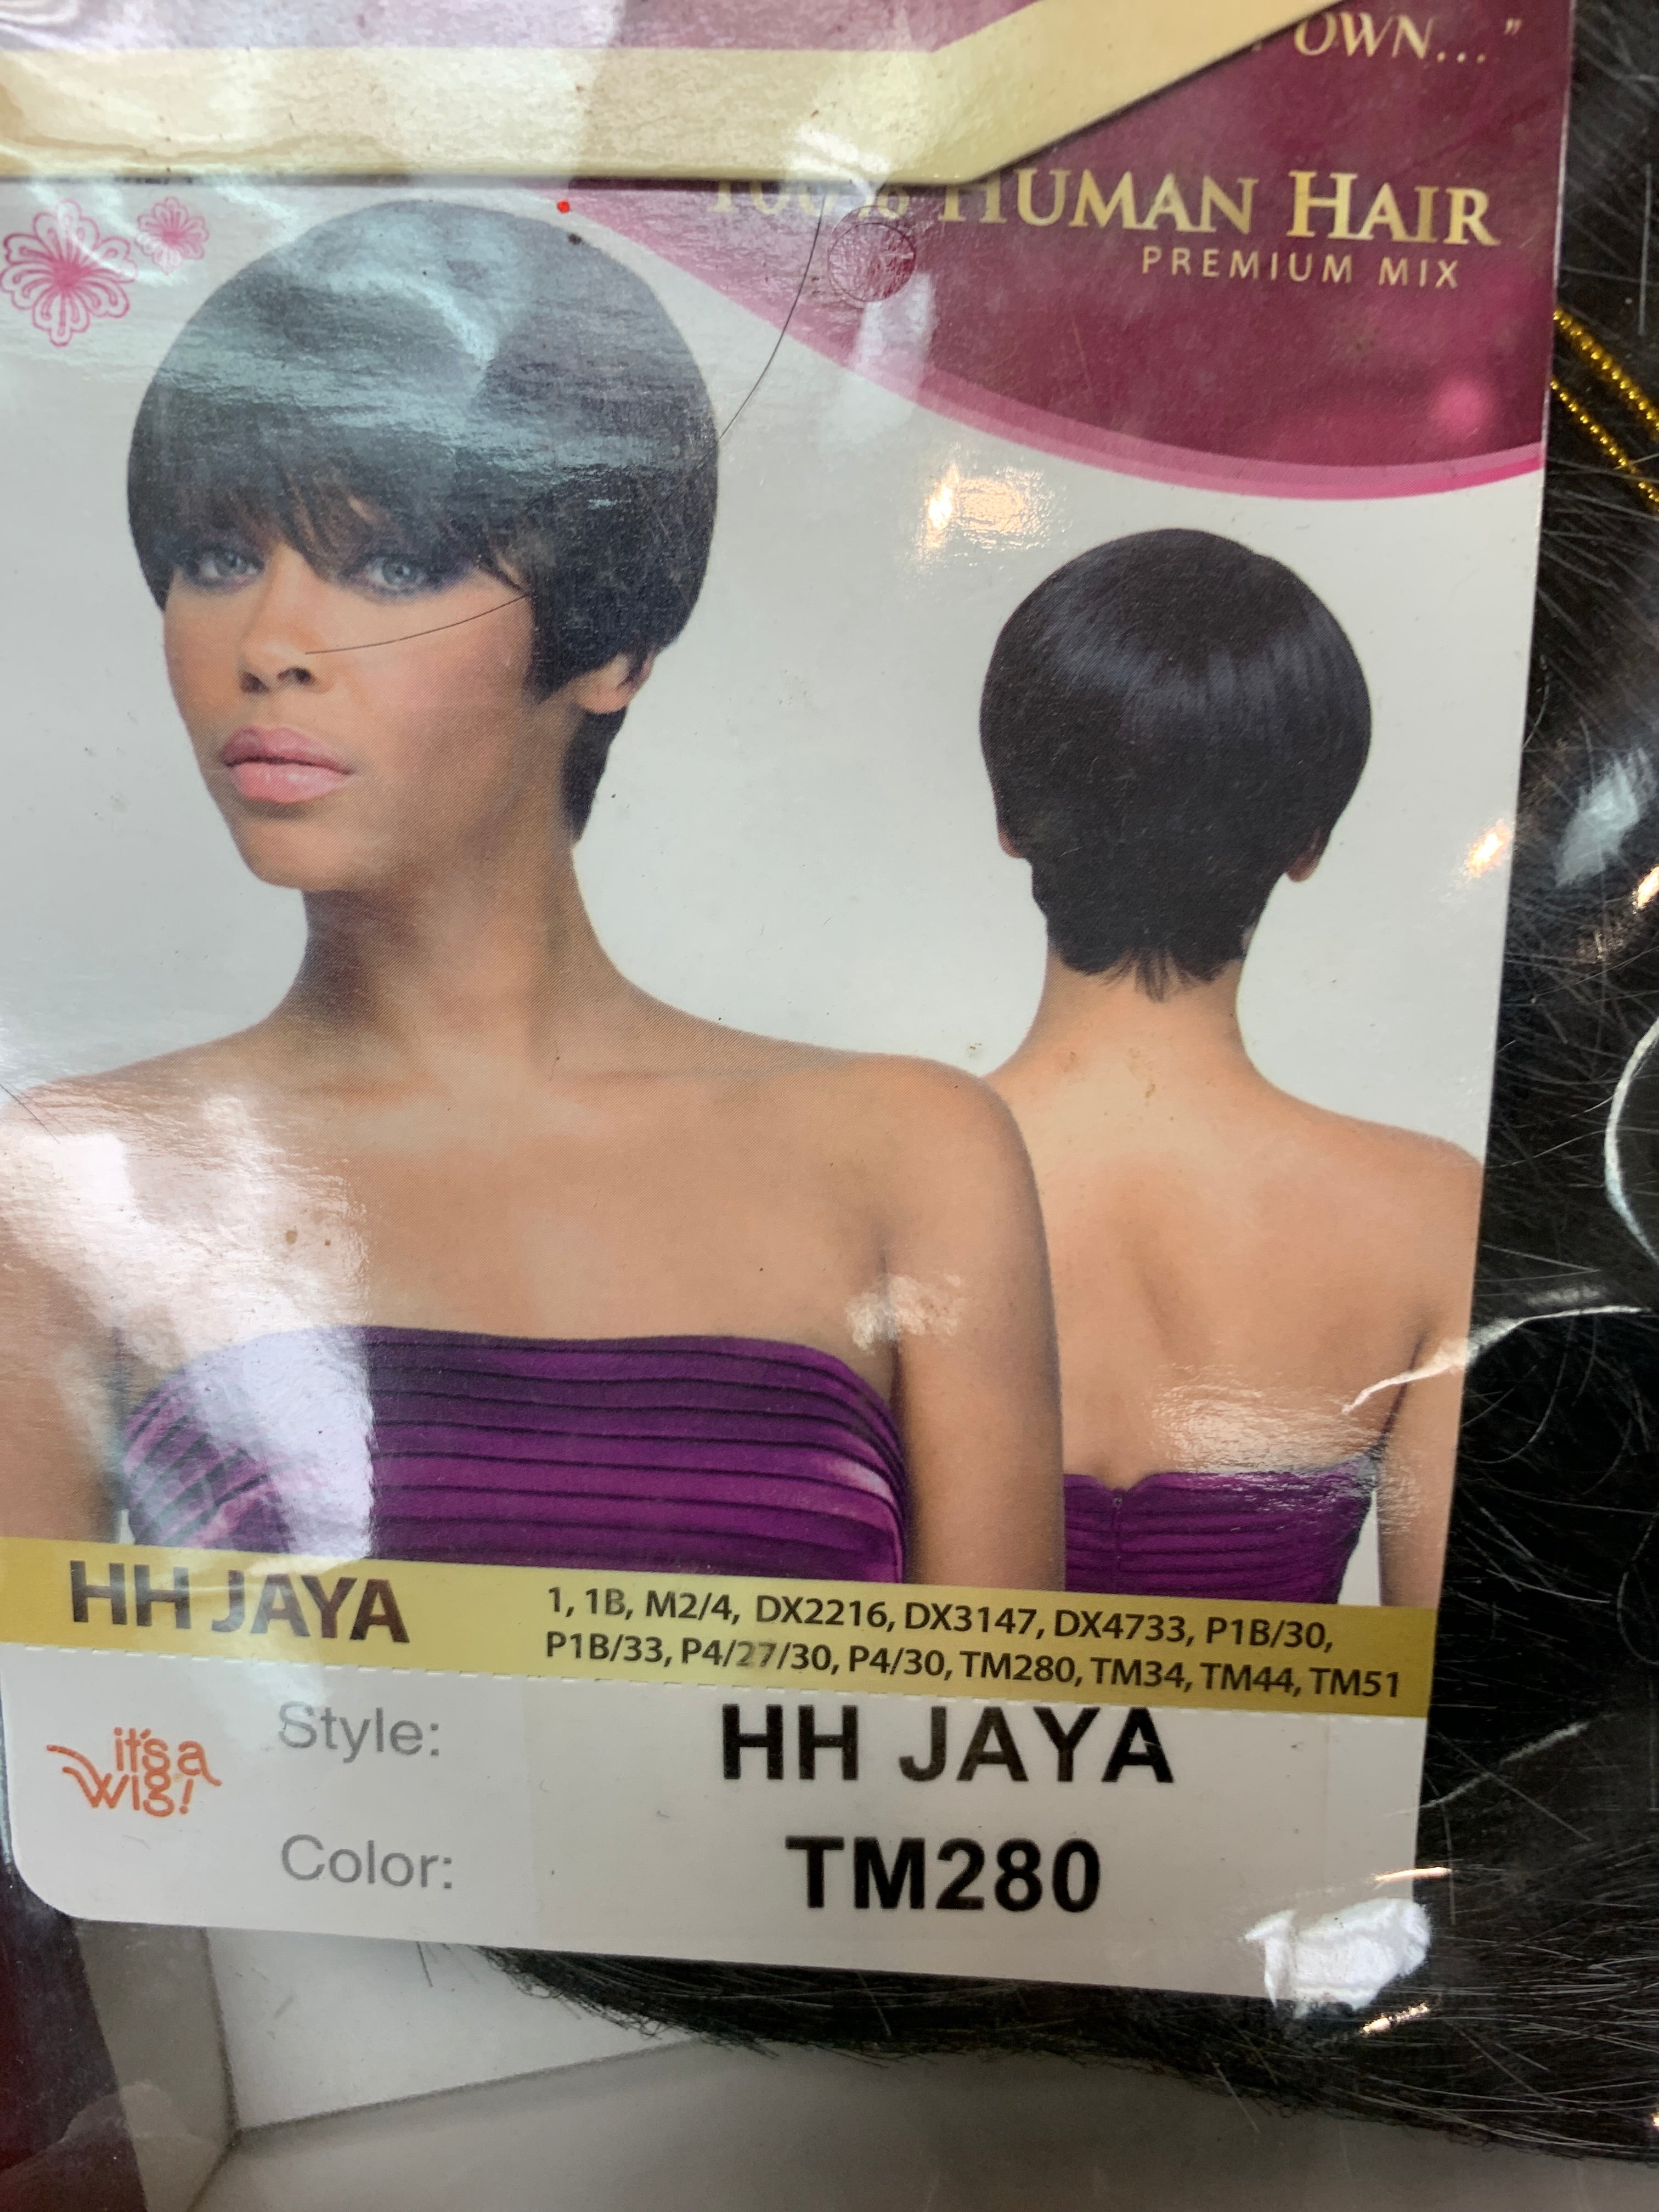 It’s a wig hh Jaya